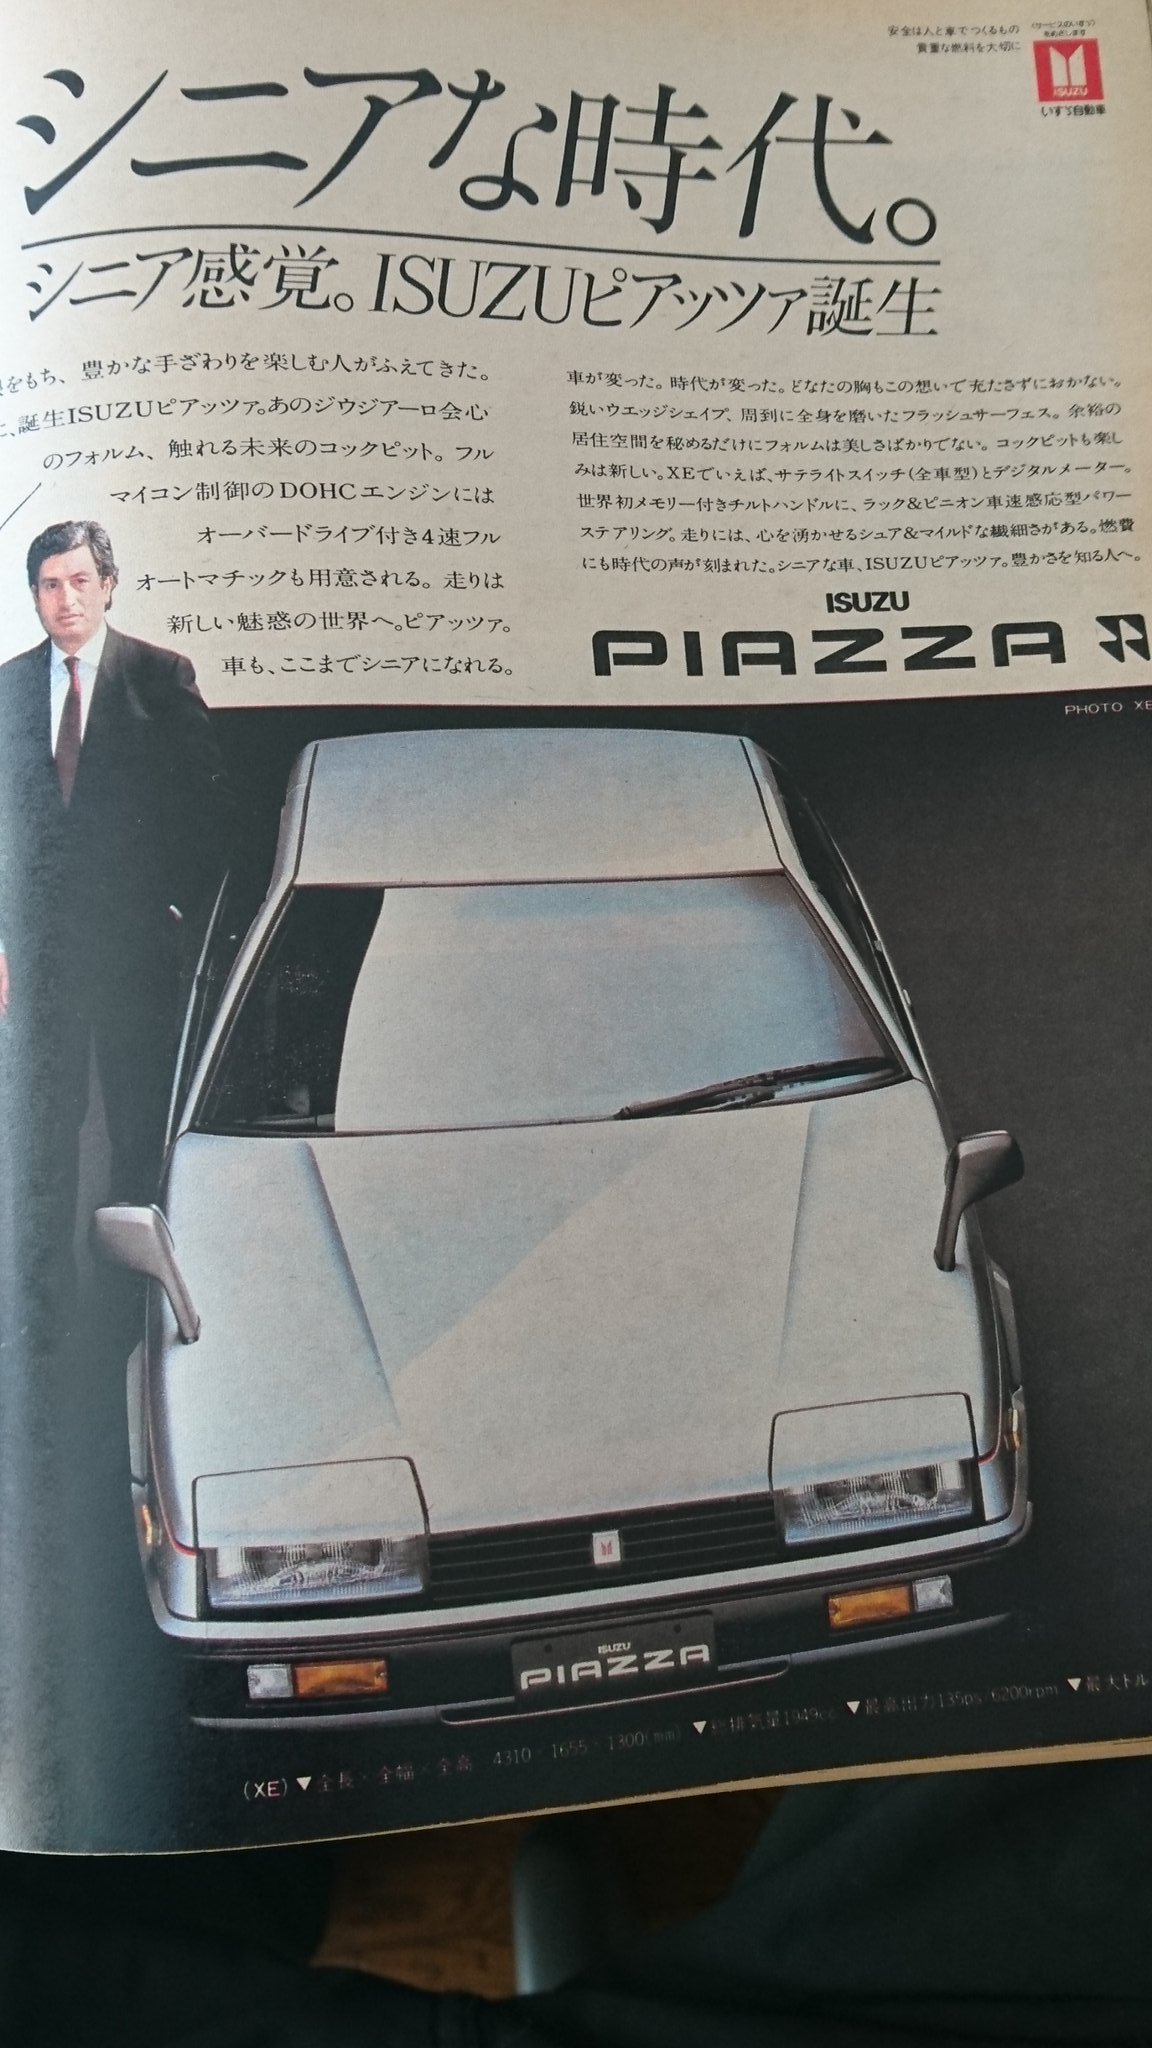 レトロ系 First Generation Isuzu Piazza The Piazza Was Produced By Isuzu From 1981 To 1991 Classiccars Japan 初代ピアッツァ 1981 1991年 T Co Vc4viyianj Twitter